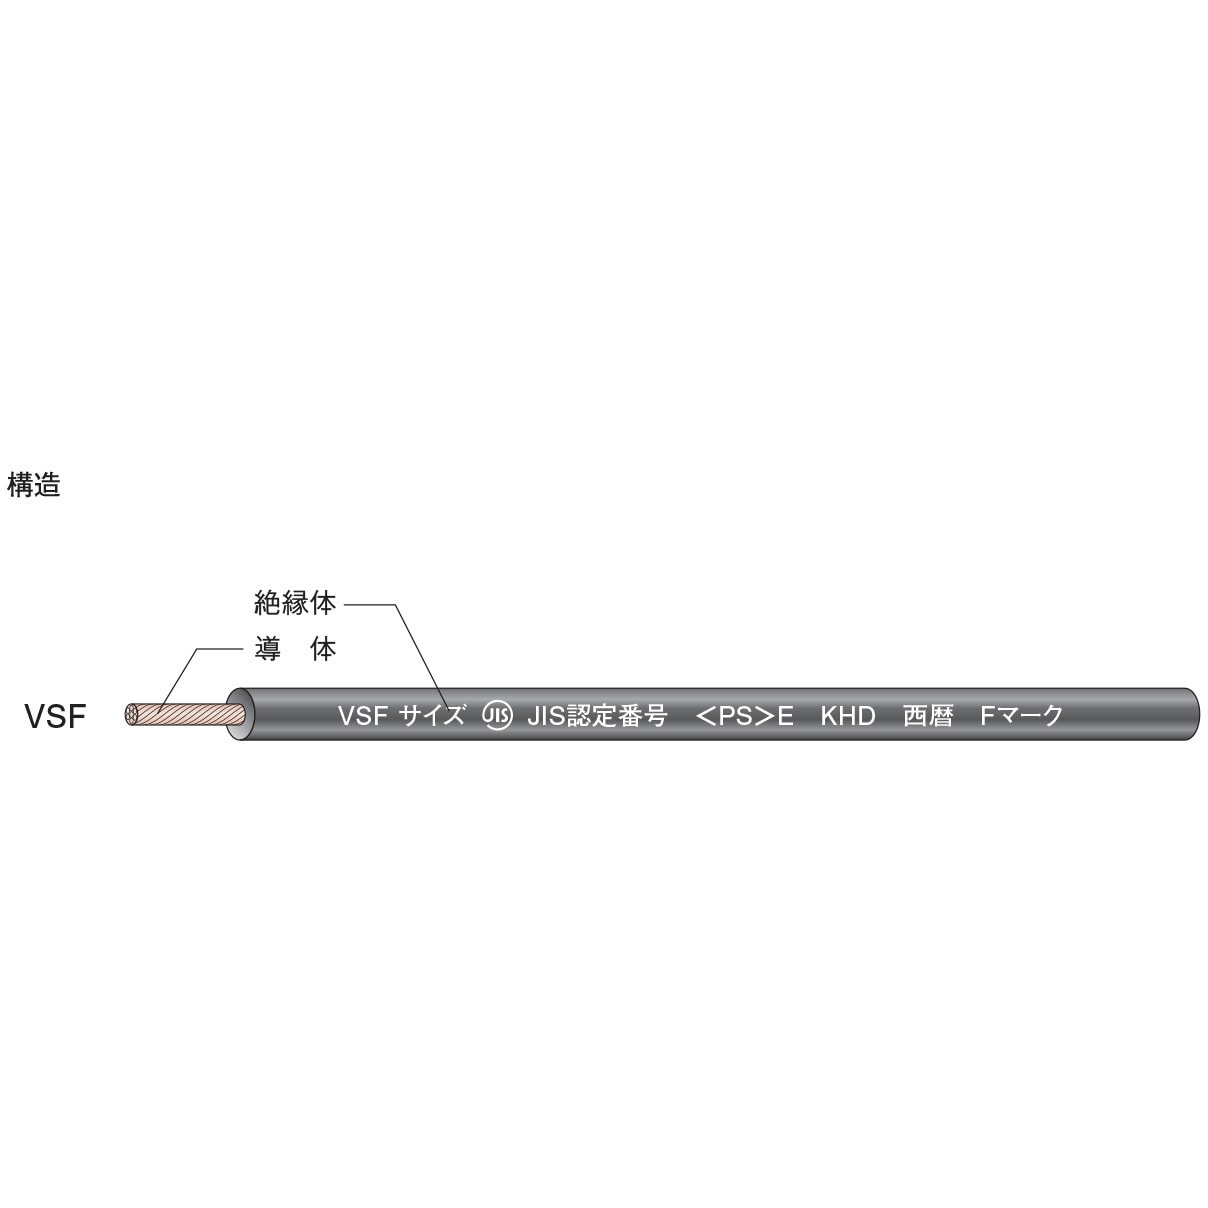 VSF 1.25sq 白 単心ビニルコード 1巻(200m) KHD 【通販サイトMonotaRO】